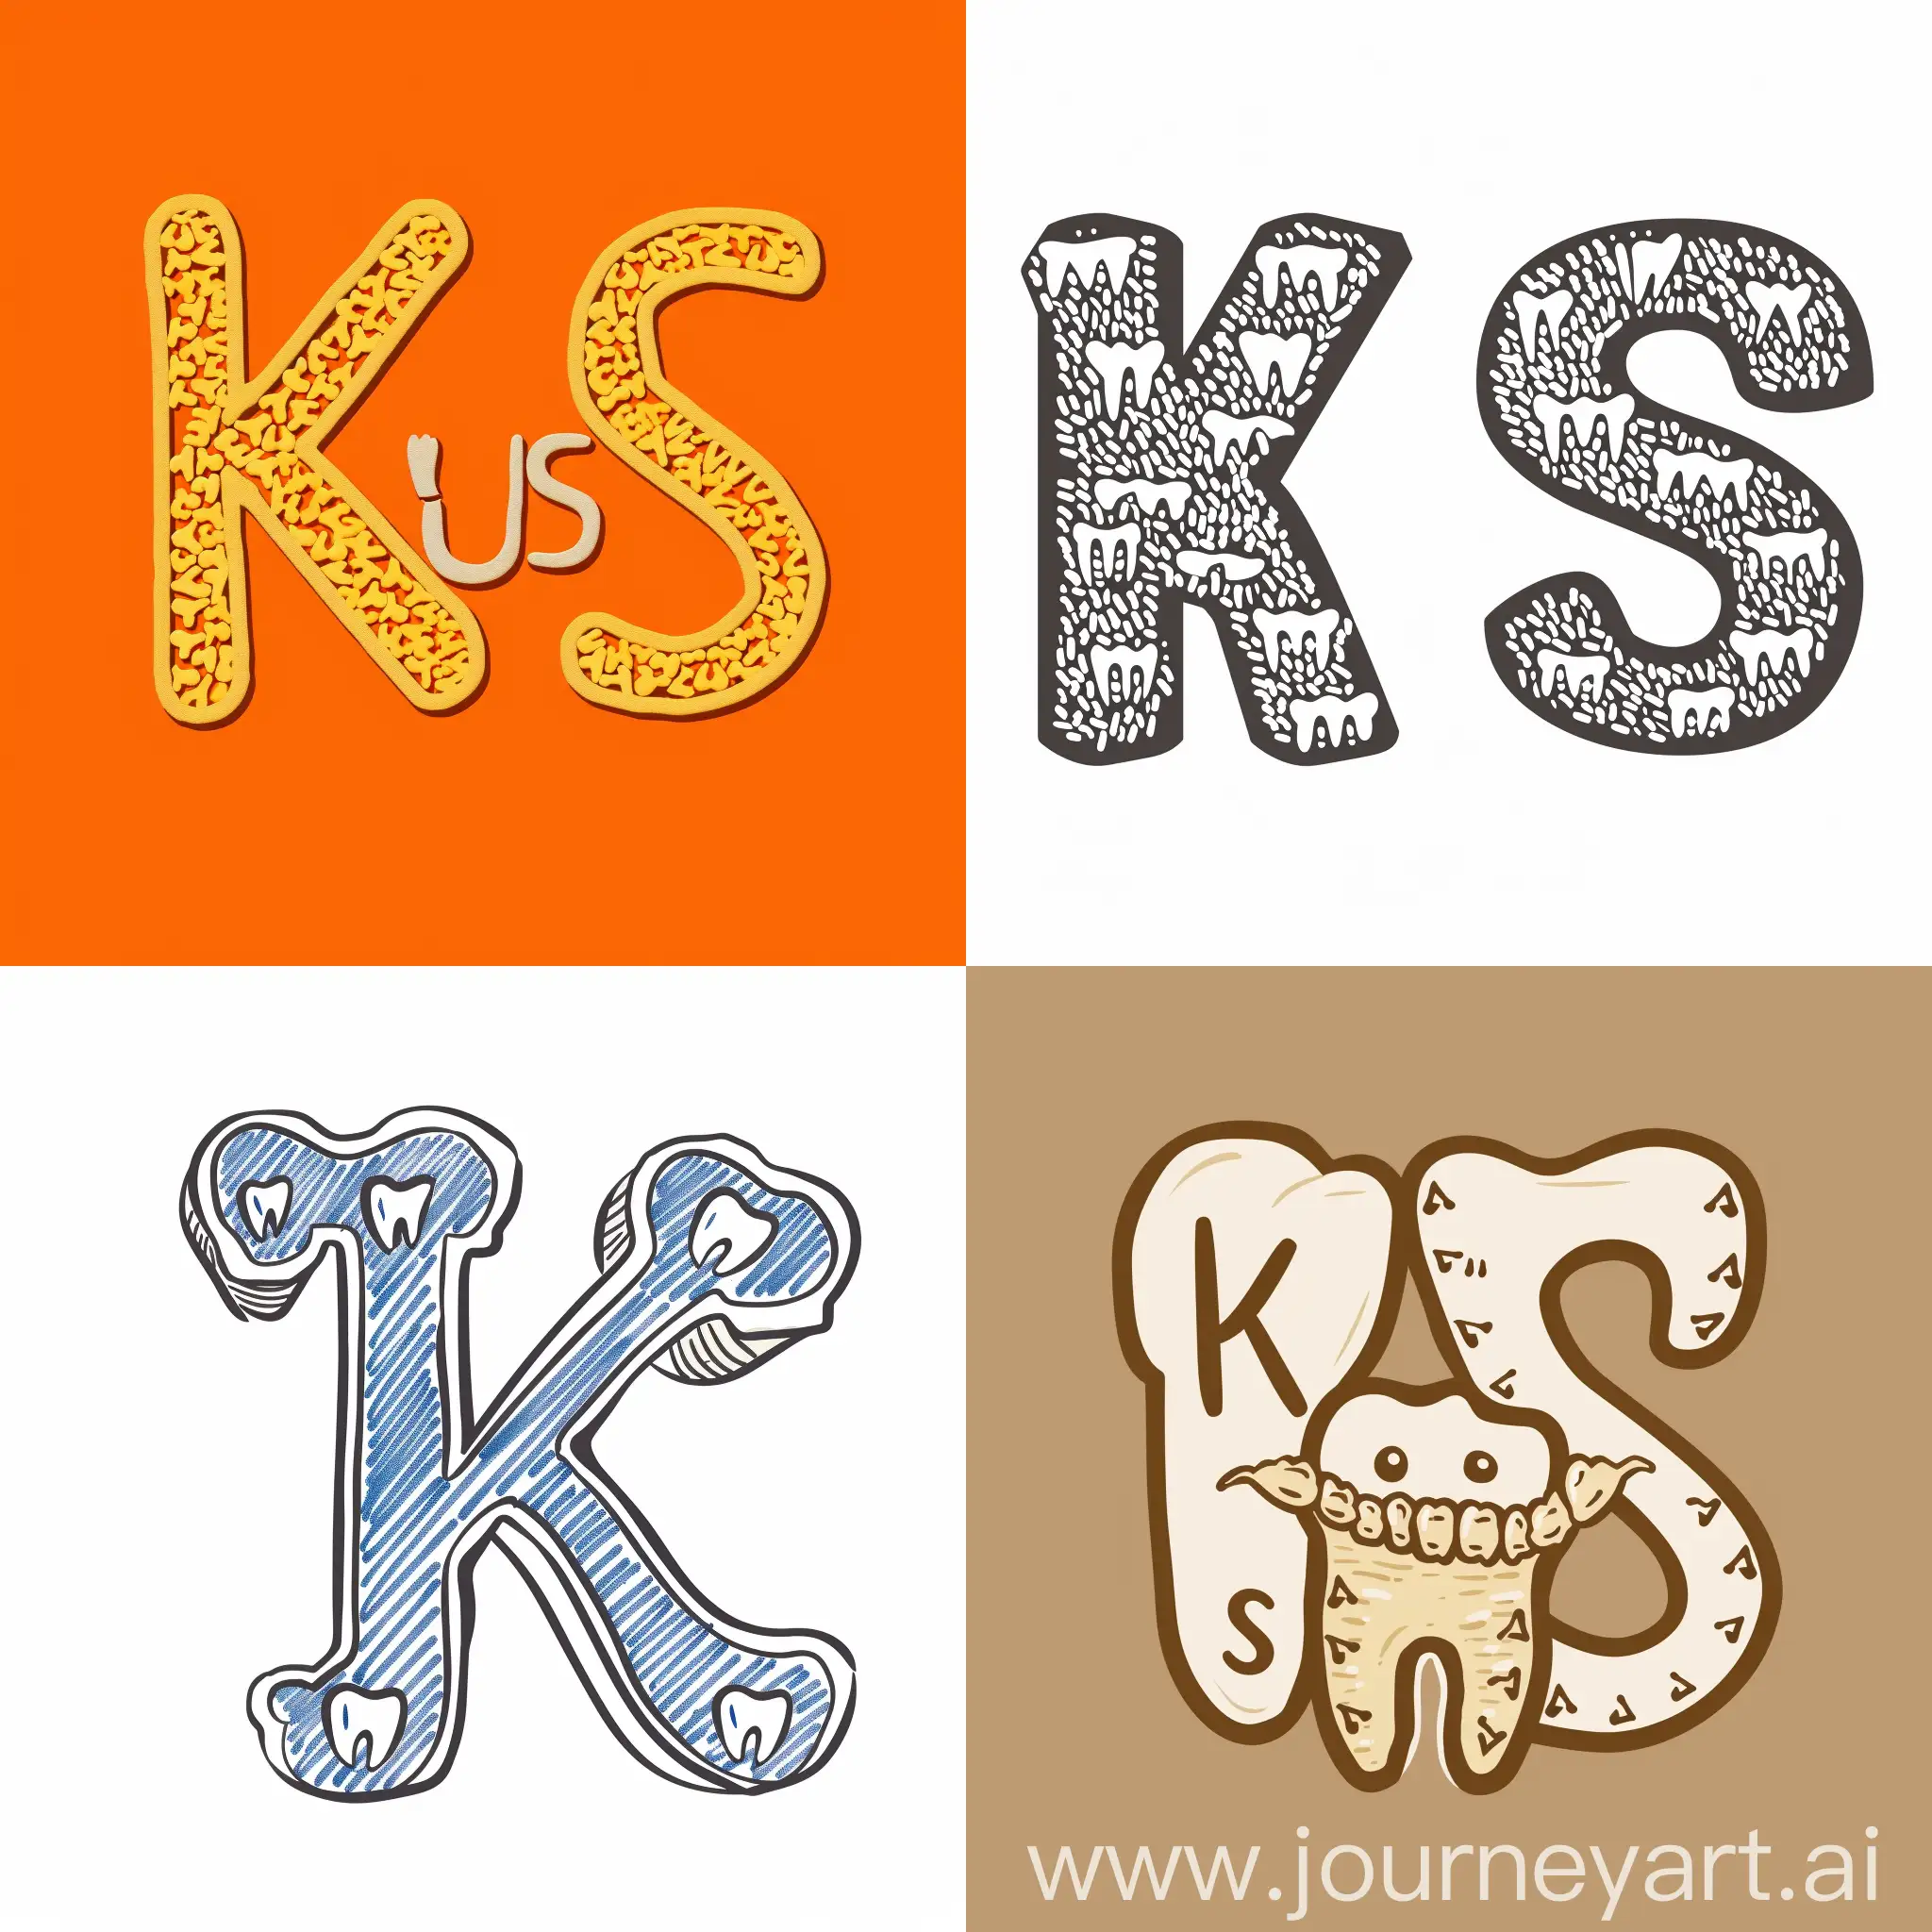 Нарисуй логотип для стоматологической клиники KusStom. Используй зубчики в качестве букв "K" и "S", чтобы обыграть название KusStom